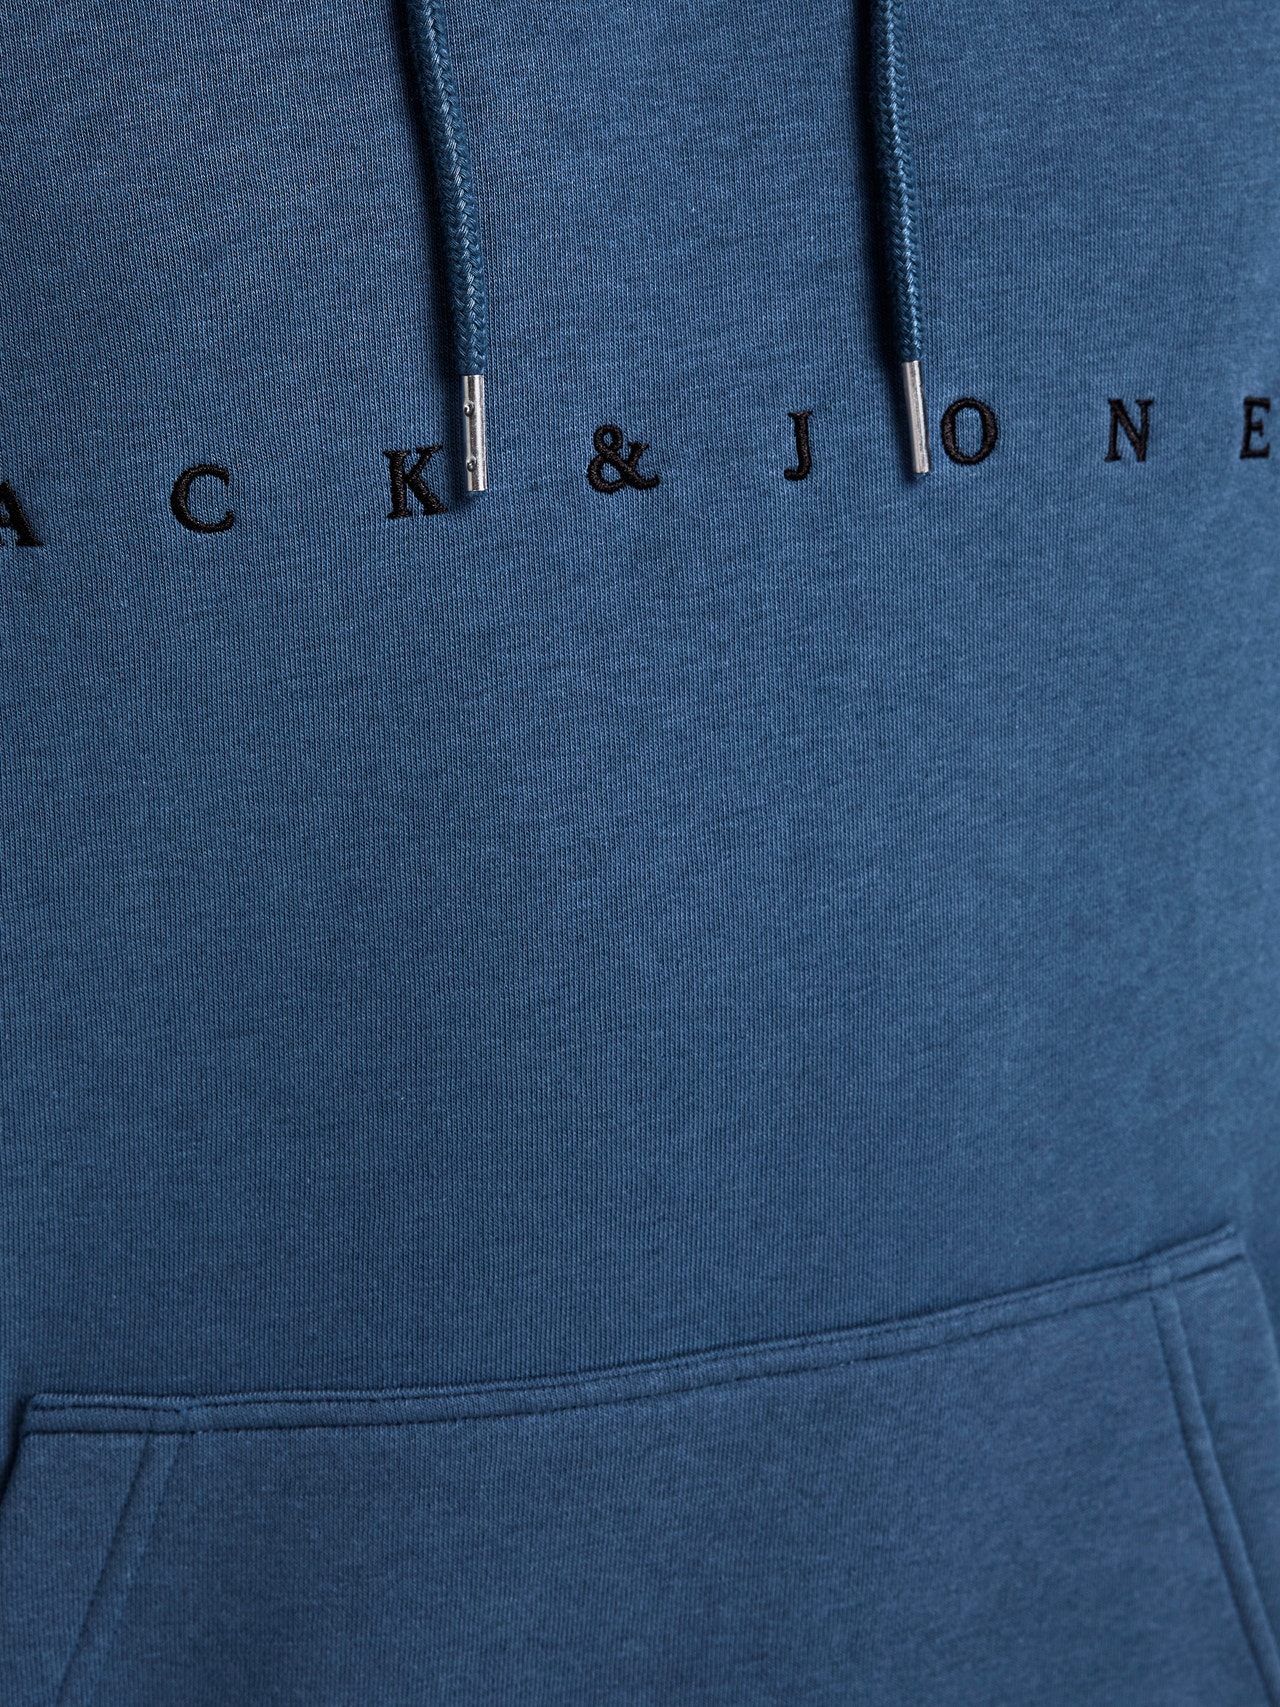 Jack & Jones Sudadera con capucha Logotipo -Ensign Blue - 12176864